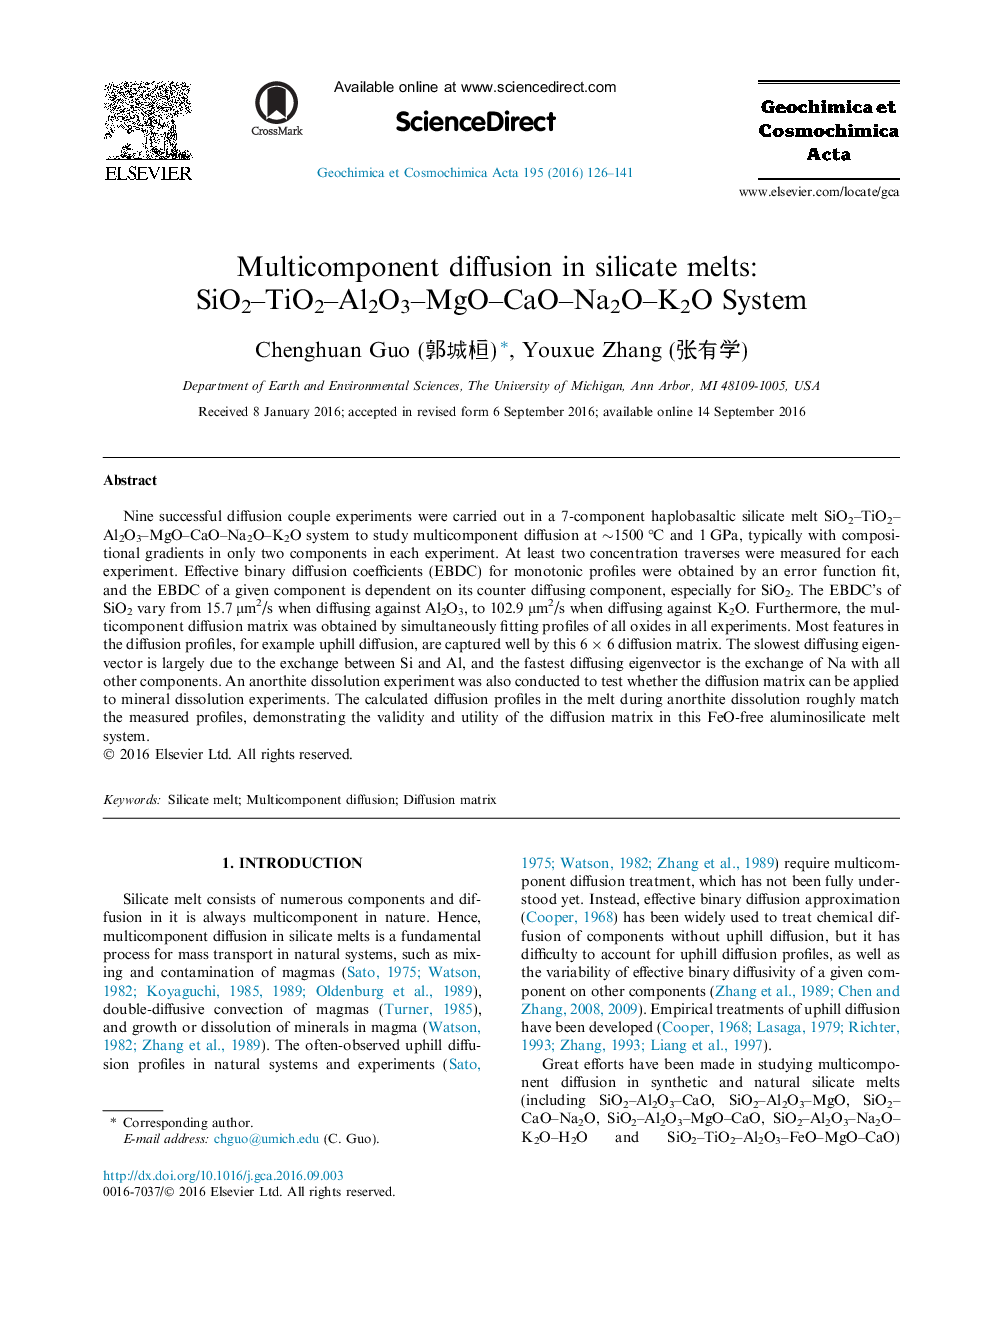 Multicomponent diffusion in silicate melts: SiO2-TiO2-Al2O3-MgO-CaO-Na2O-K2O System